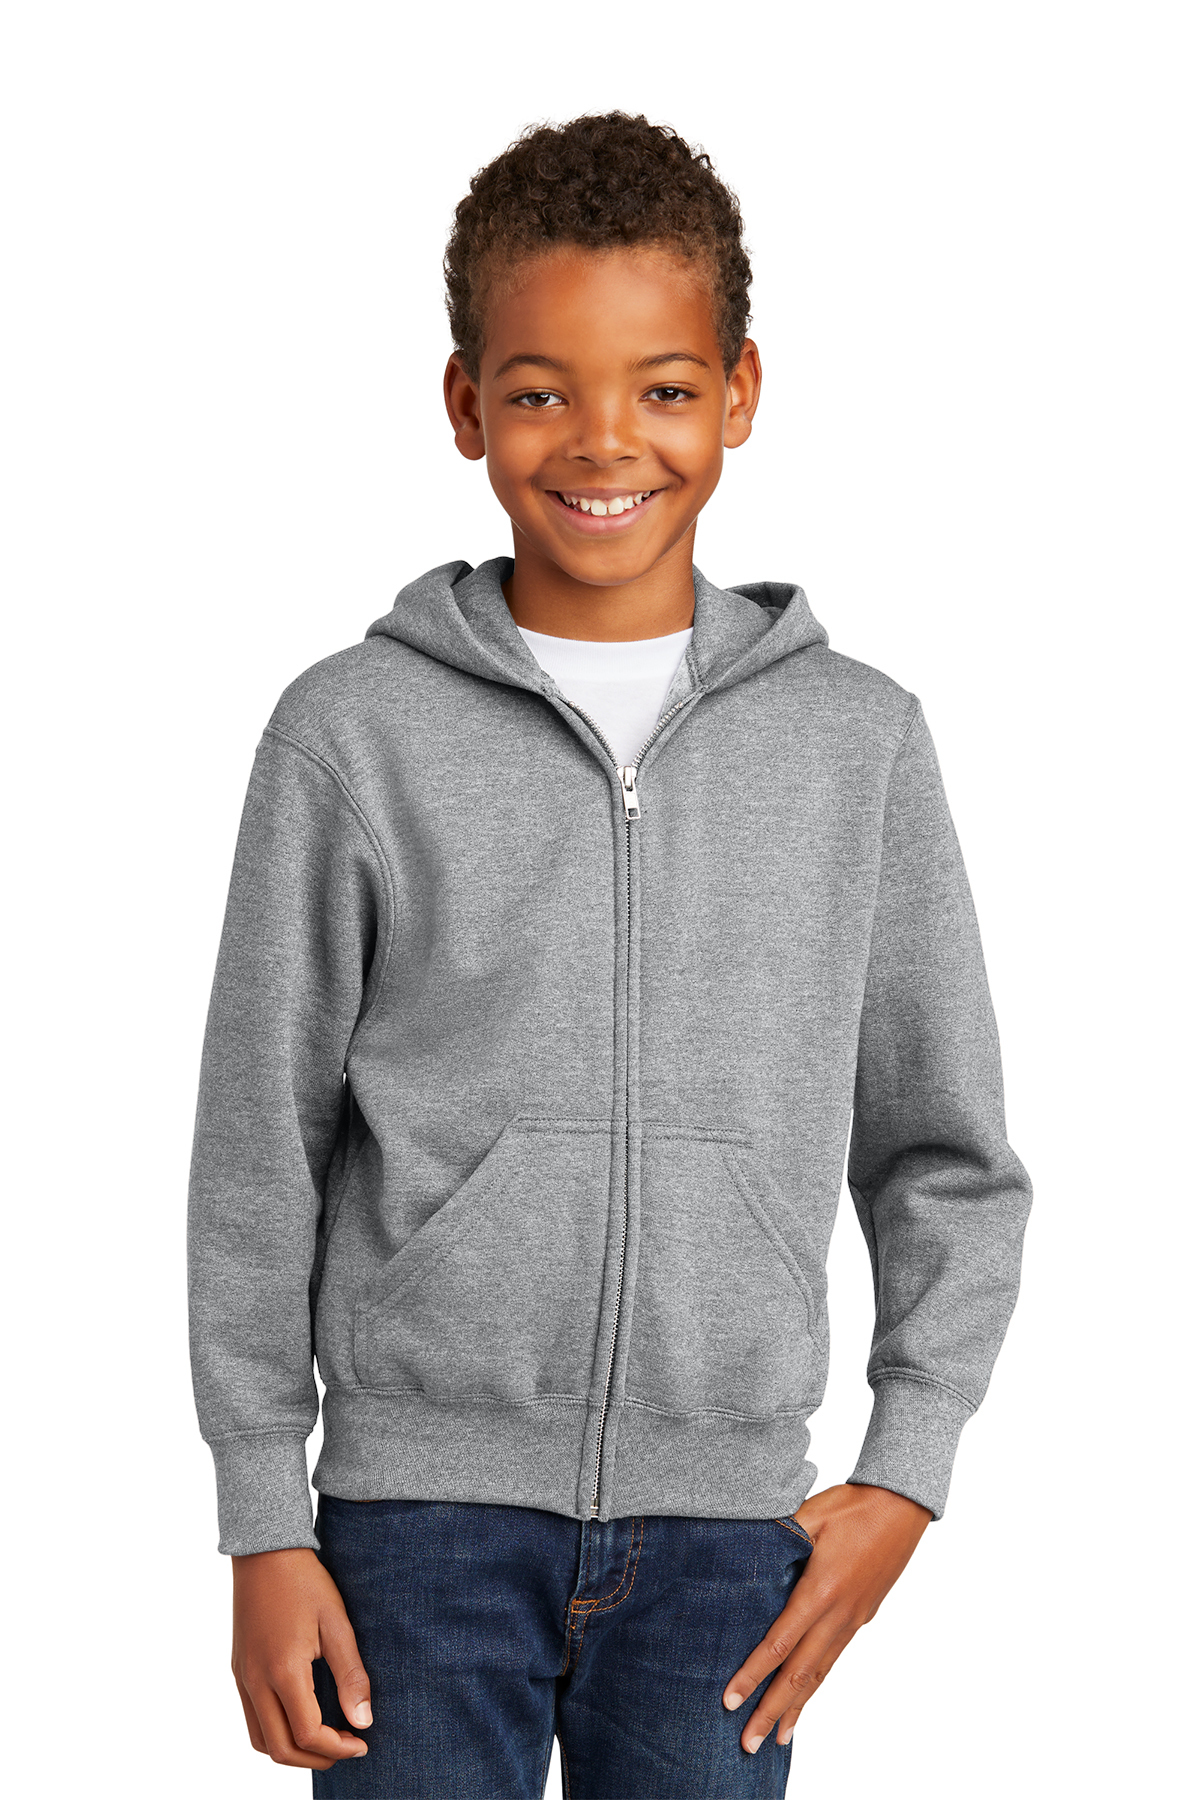 Port & Company Core Fleece Full-Zip Hooded Sweatshirt, Product